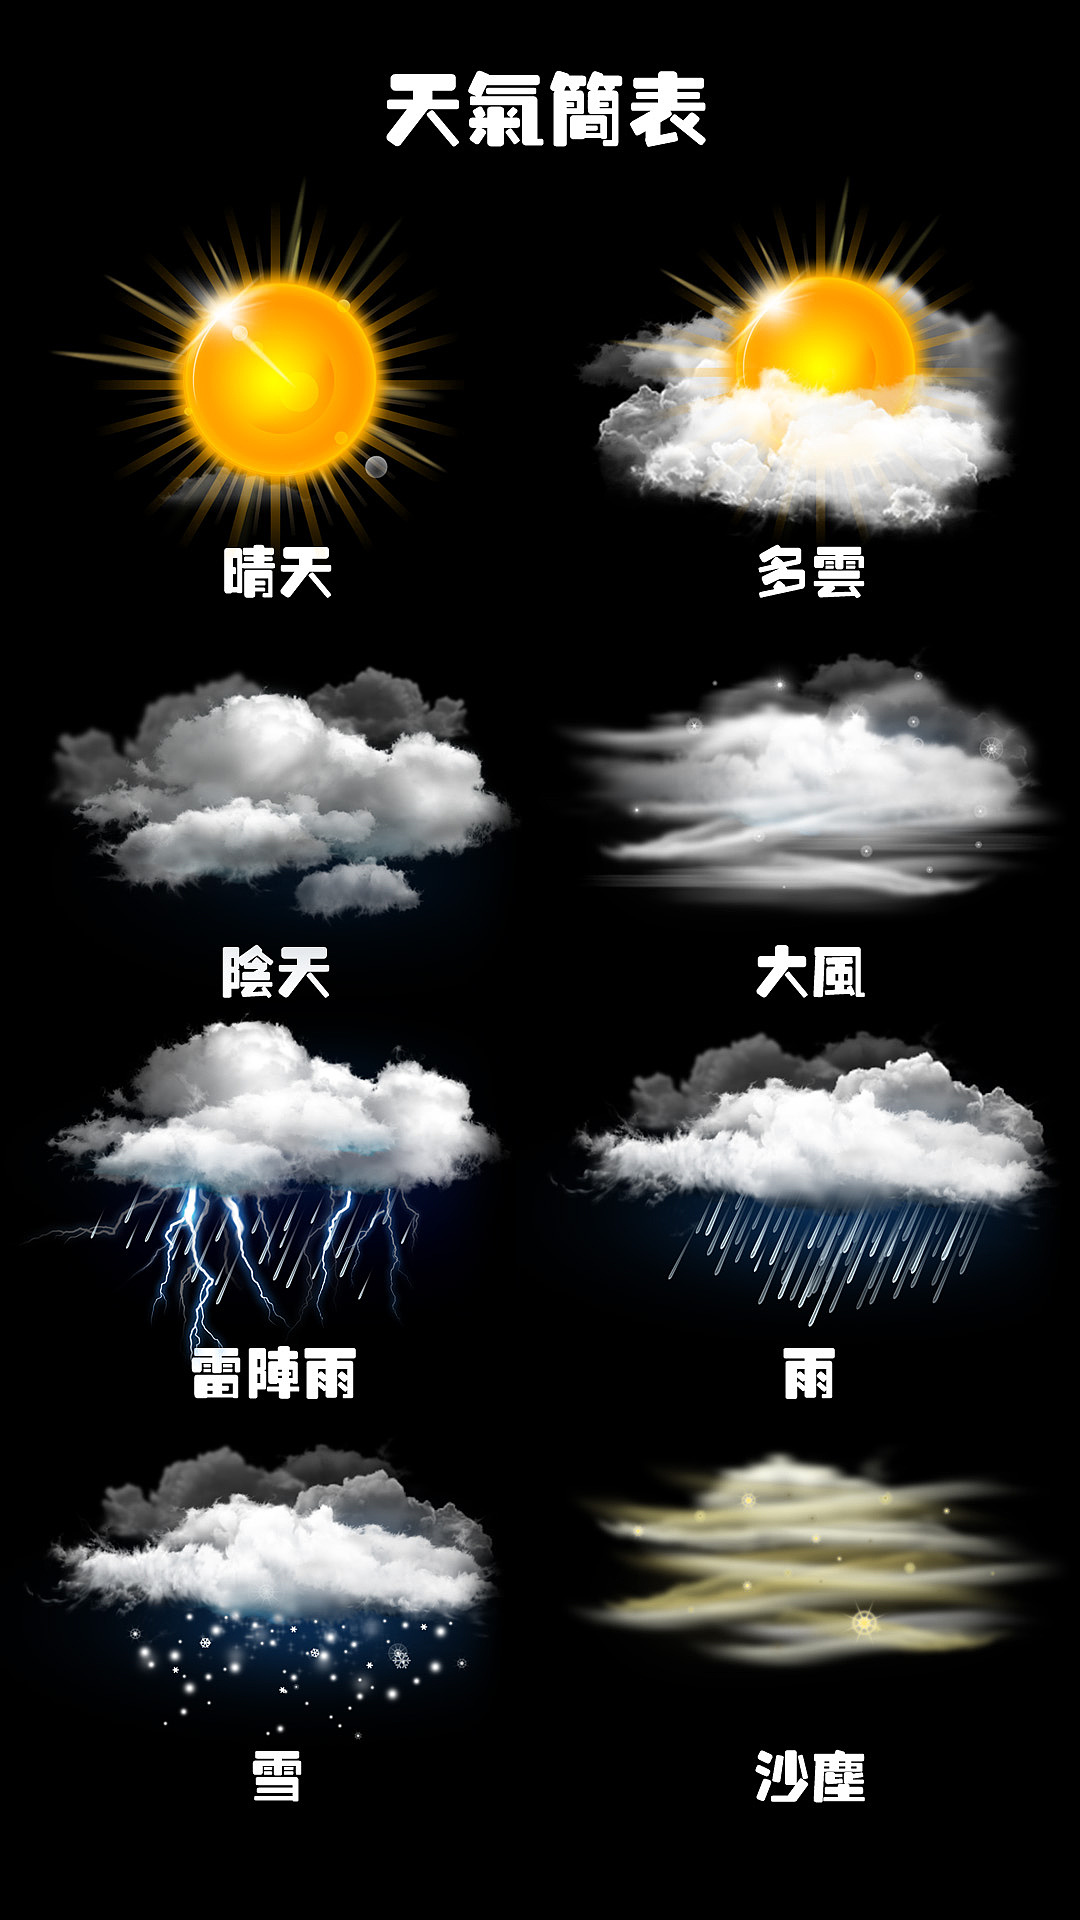 天气图标  写实天气图标会随着天气变化而动作,无论晴天还是雨天都会